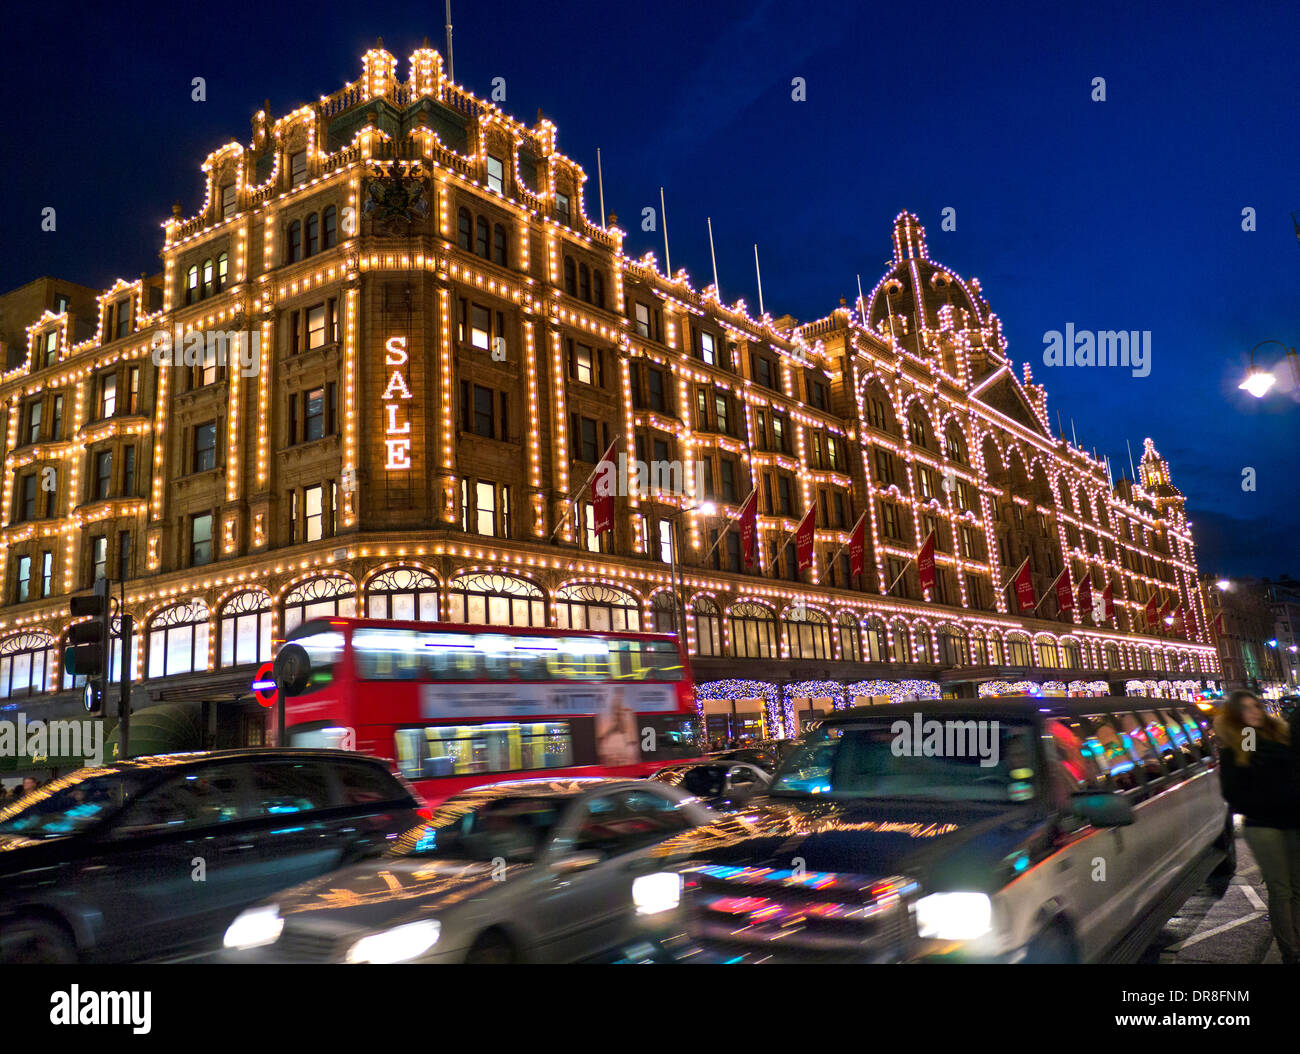 Das Kaufhaus Harrods in der Abenddämmerung mit beleuchteten "Sale" Schild Shopper rot Bus vorbei Taxis & Stretch-Limousine Knightsbridge London SW1 Stockfoto